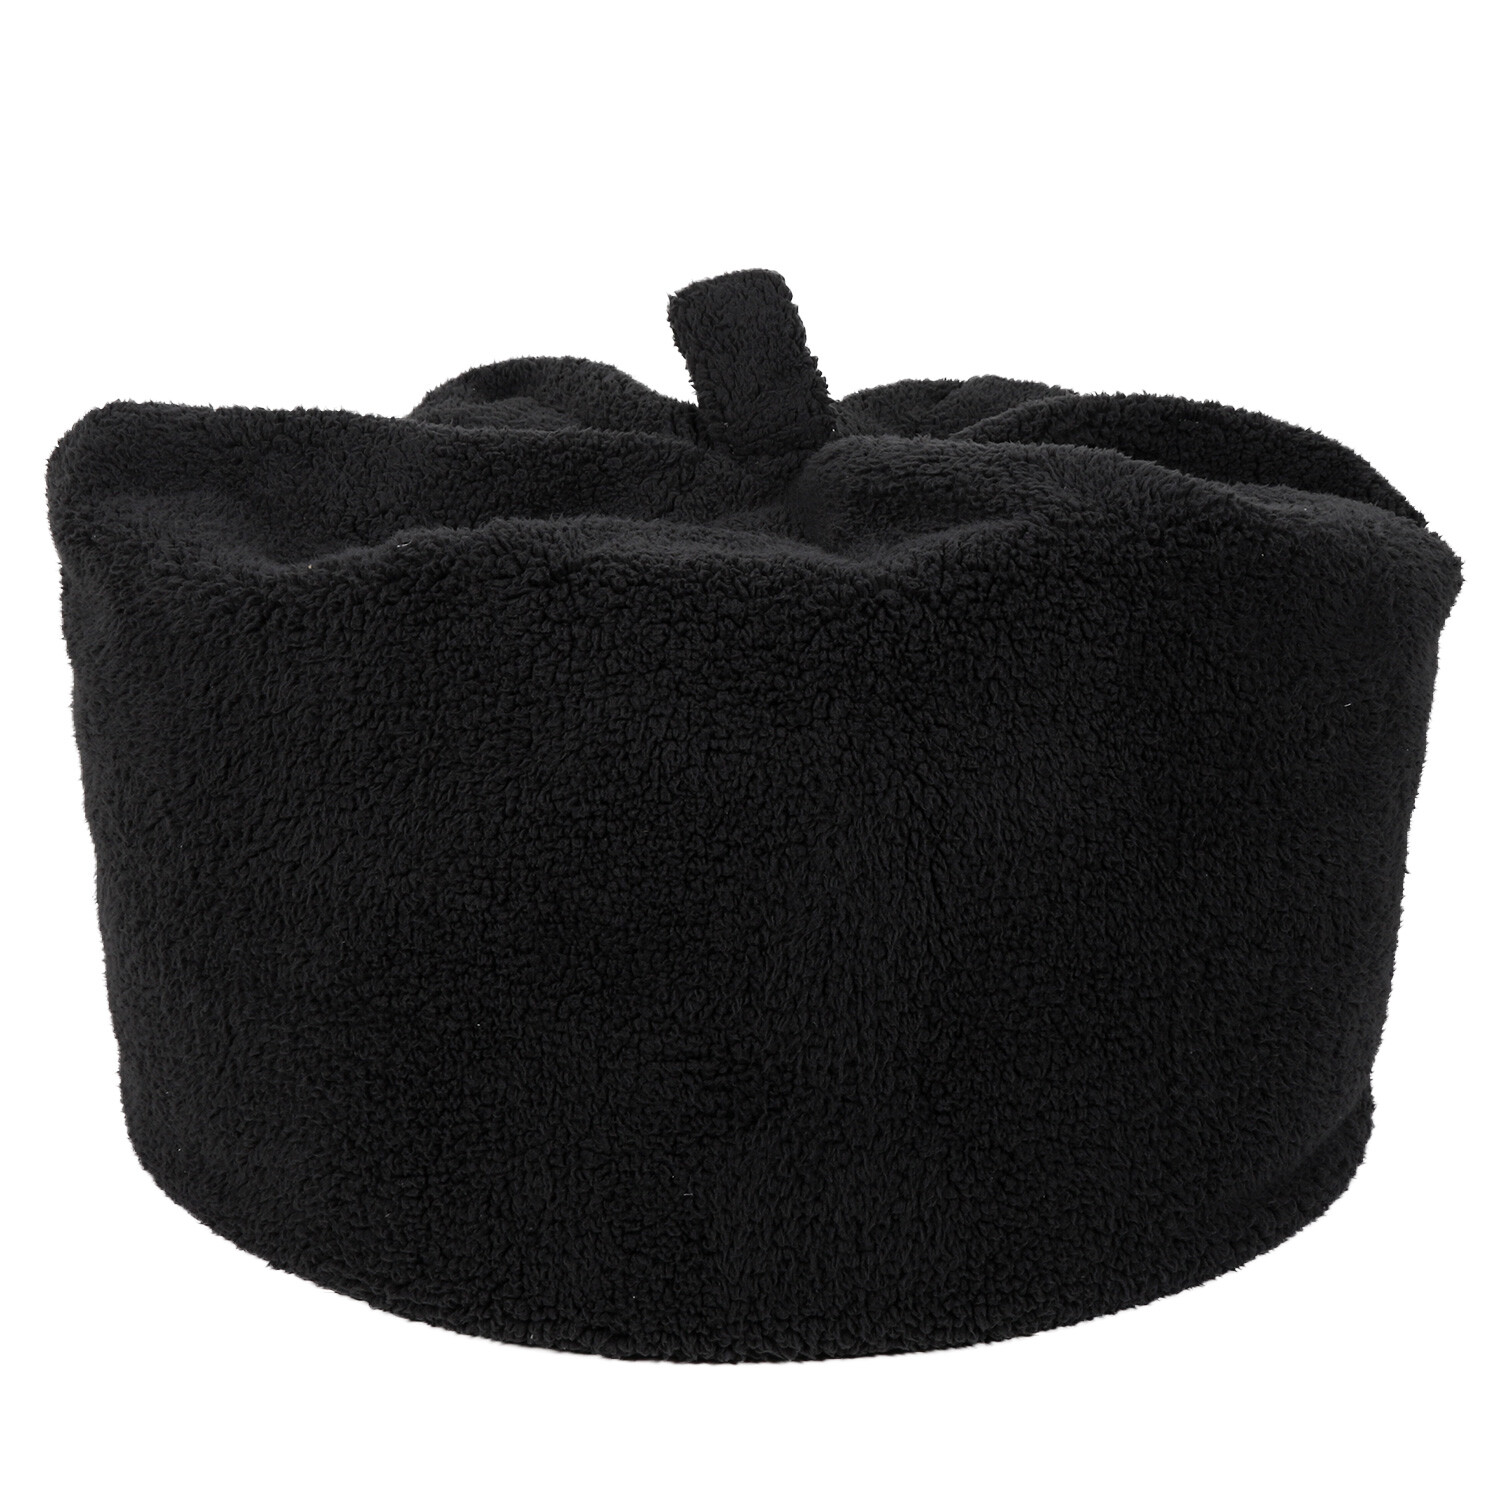 Divante Black Teddy Fleece Bean Bag Image 2